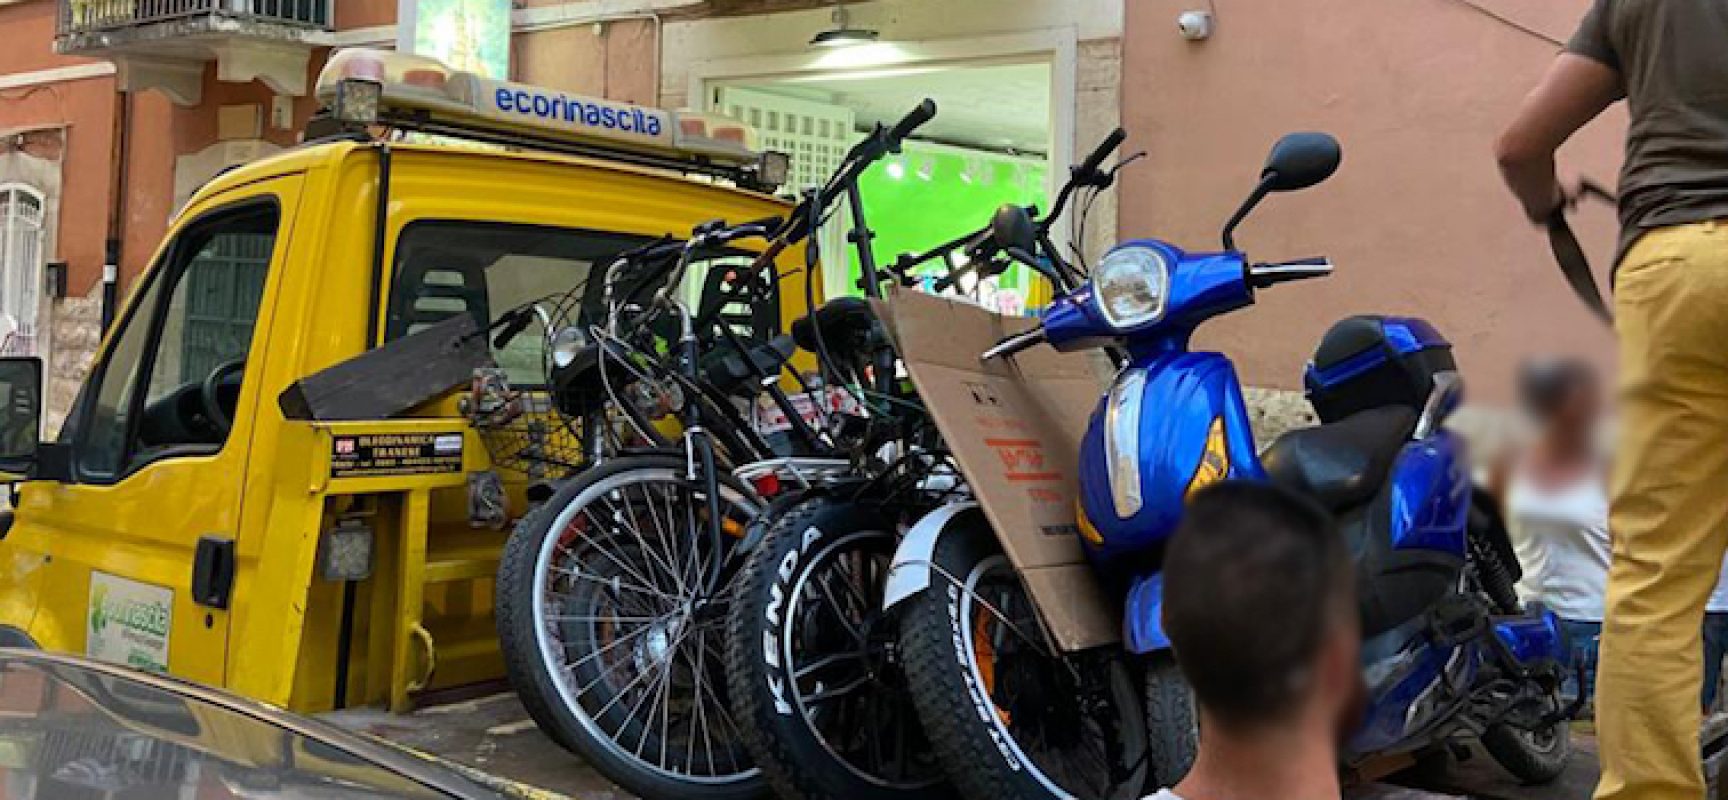 Dodici biciclette elettriche sequestrate: saranno sottoposte a verifica per decidere su confisca